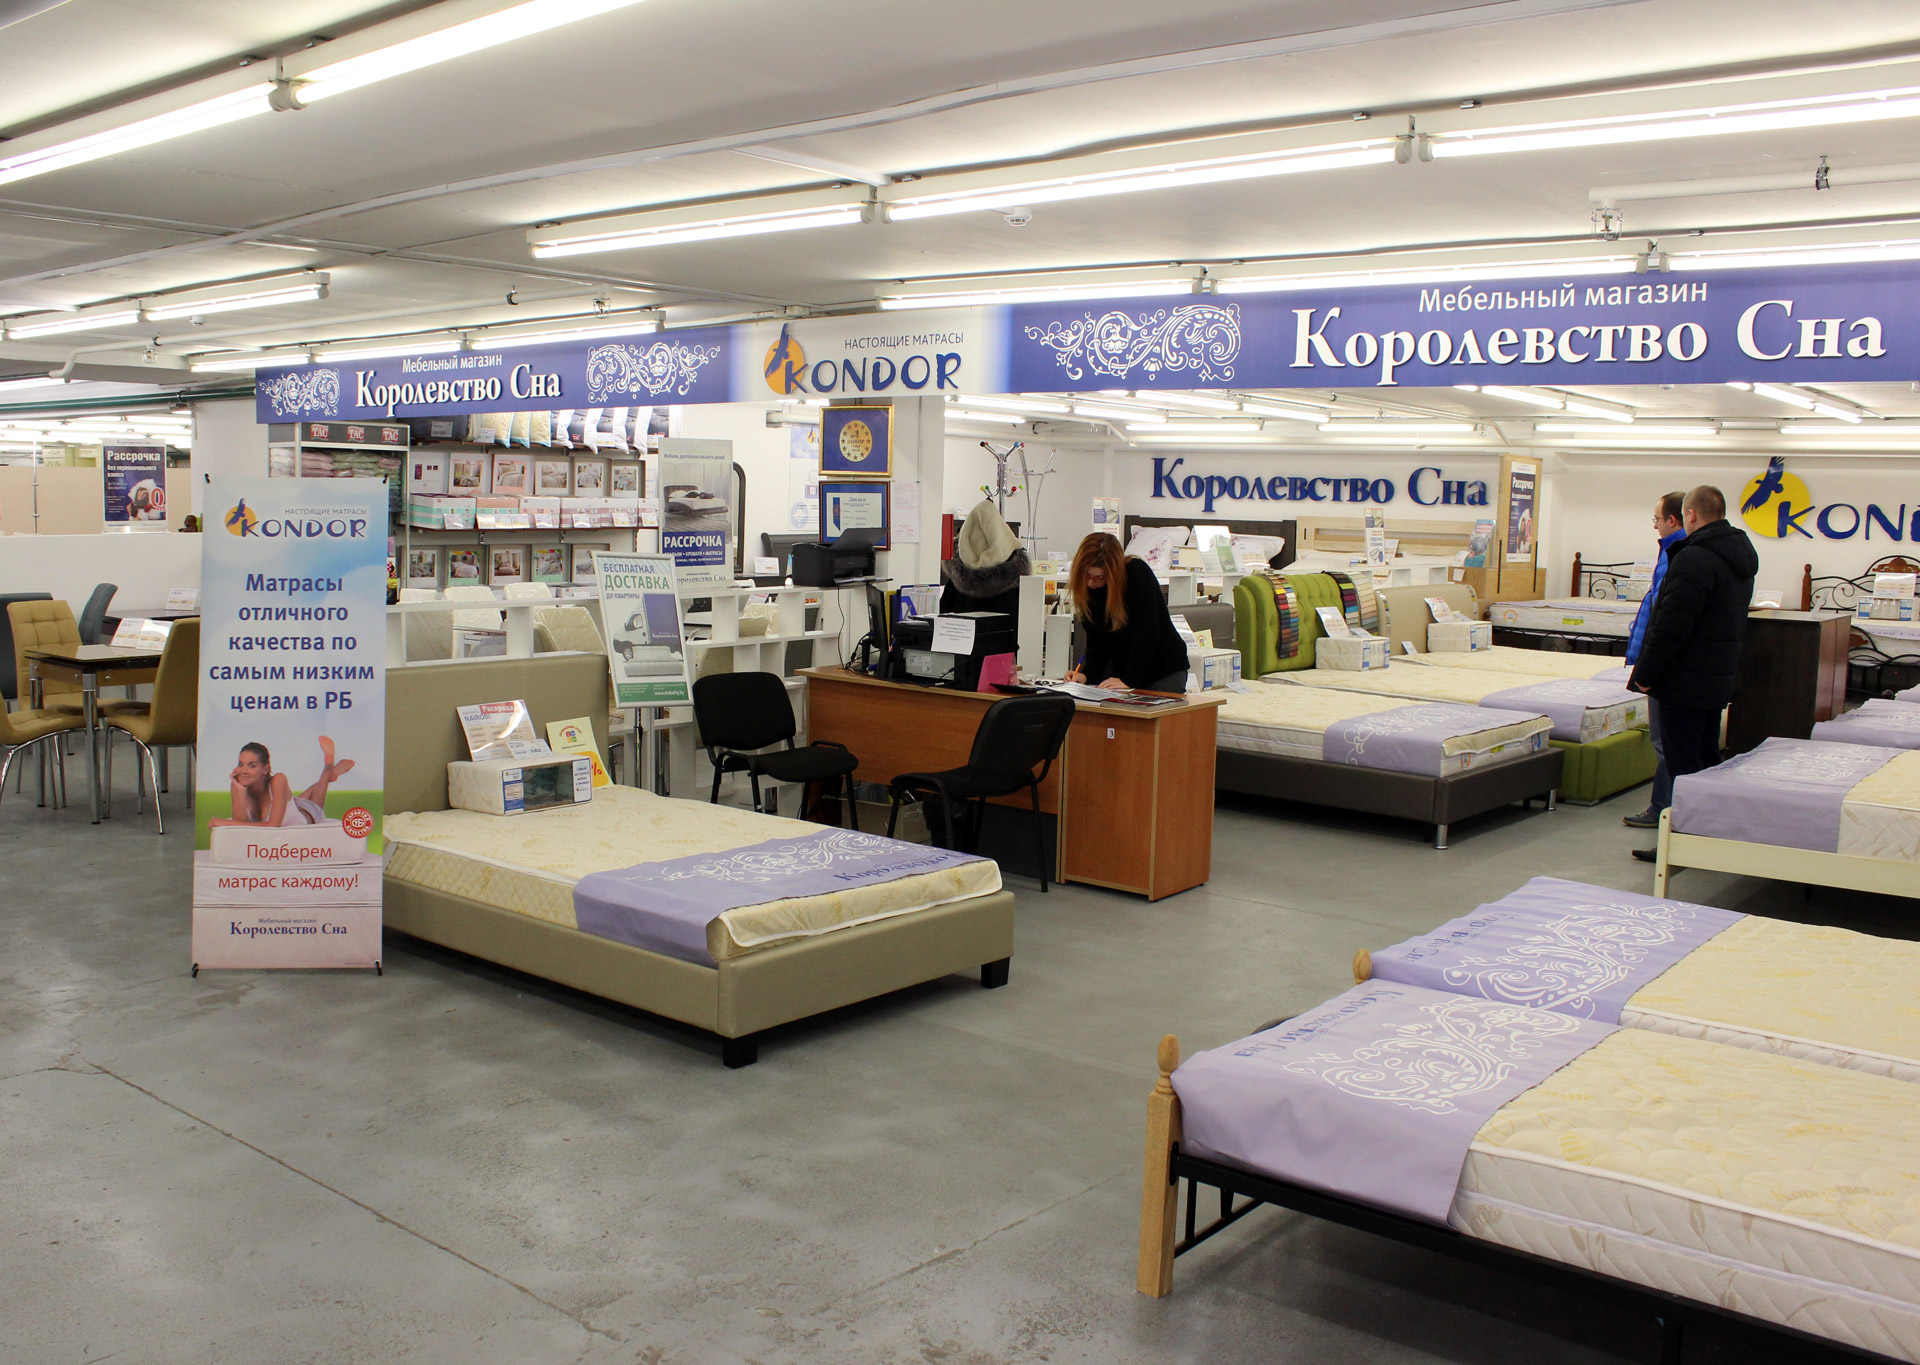 Полотенца в магазине королевство сна в Минске